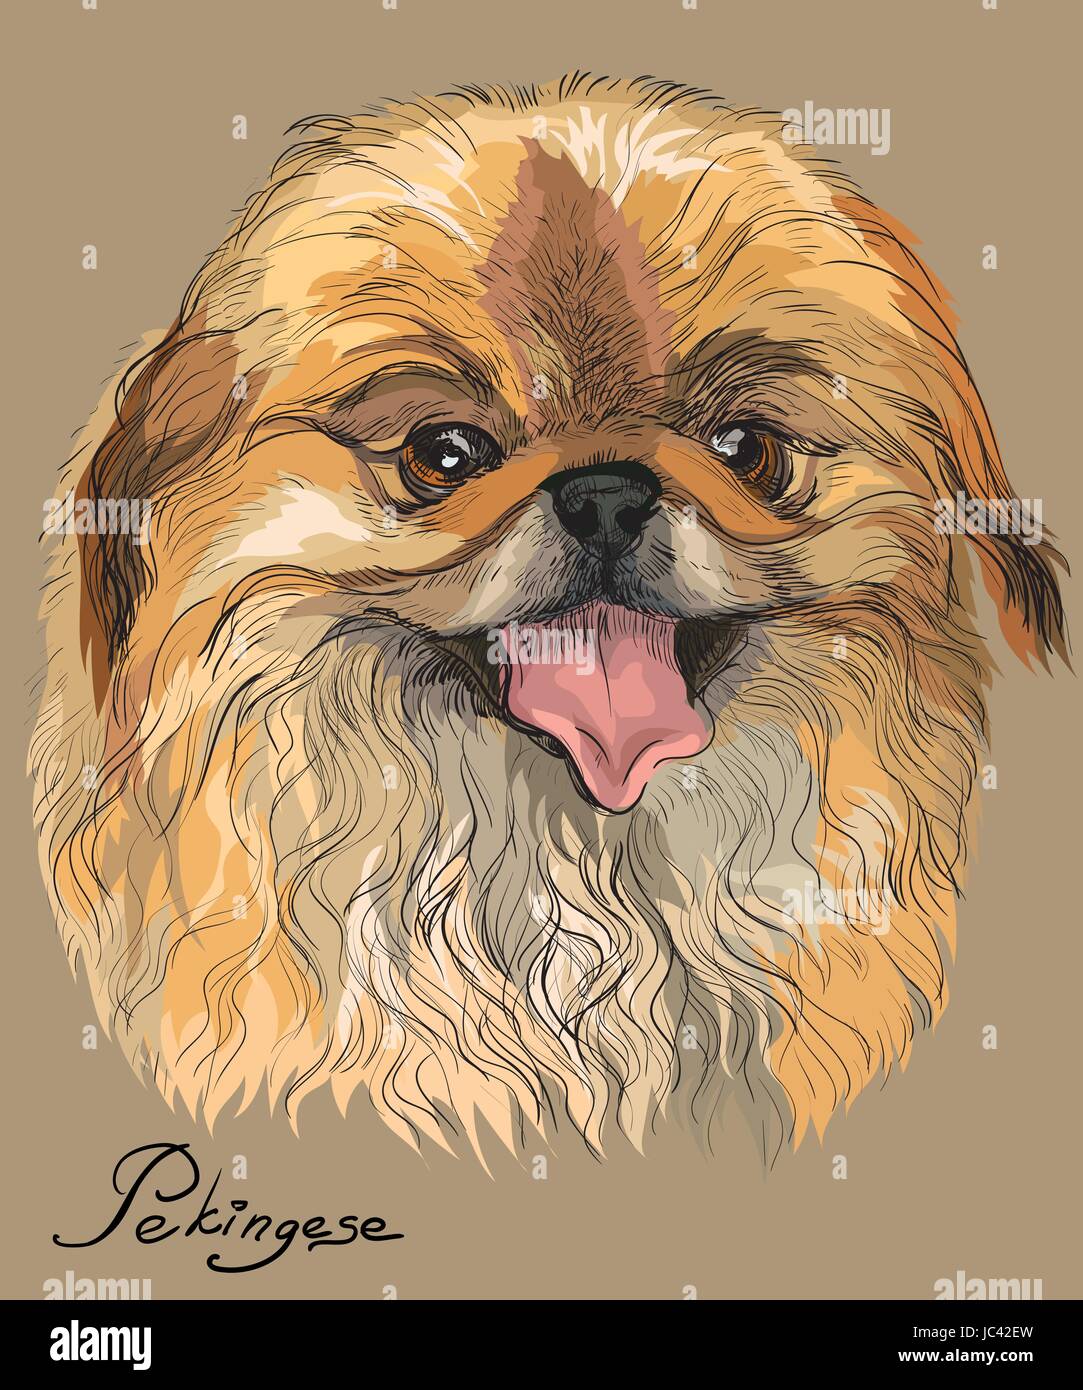 Vektor farbigen Porträt von Pekinese Hund Handzeichnung Illustration auf Beige Hintergrund Stock Vektor